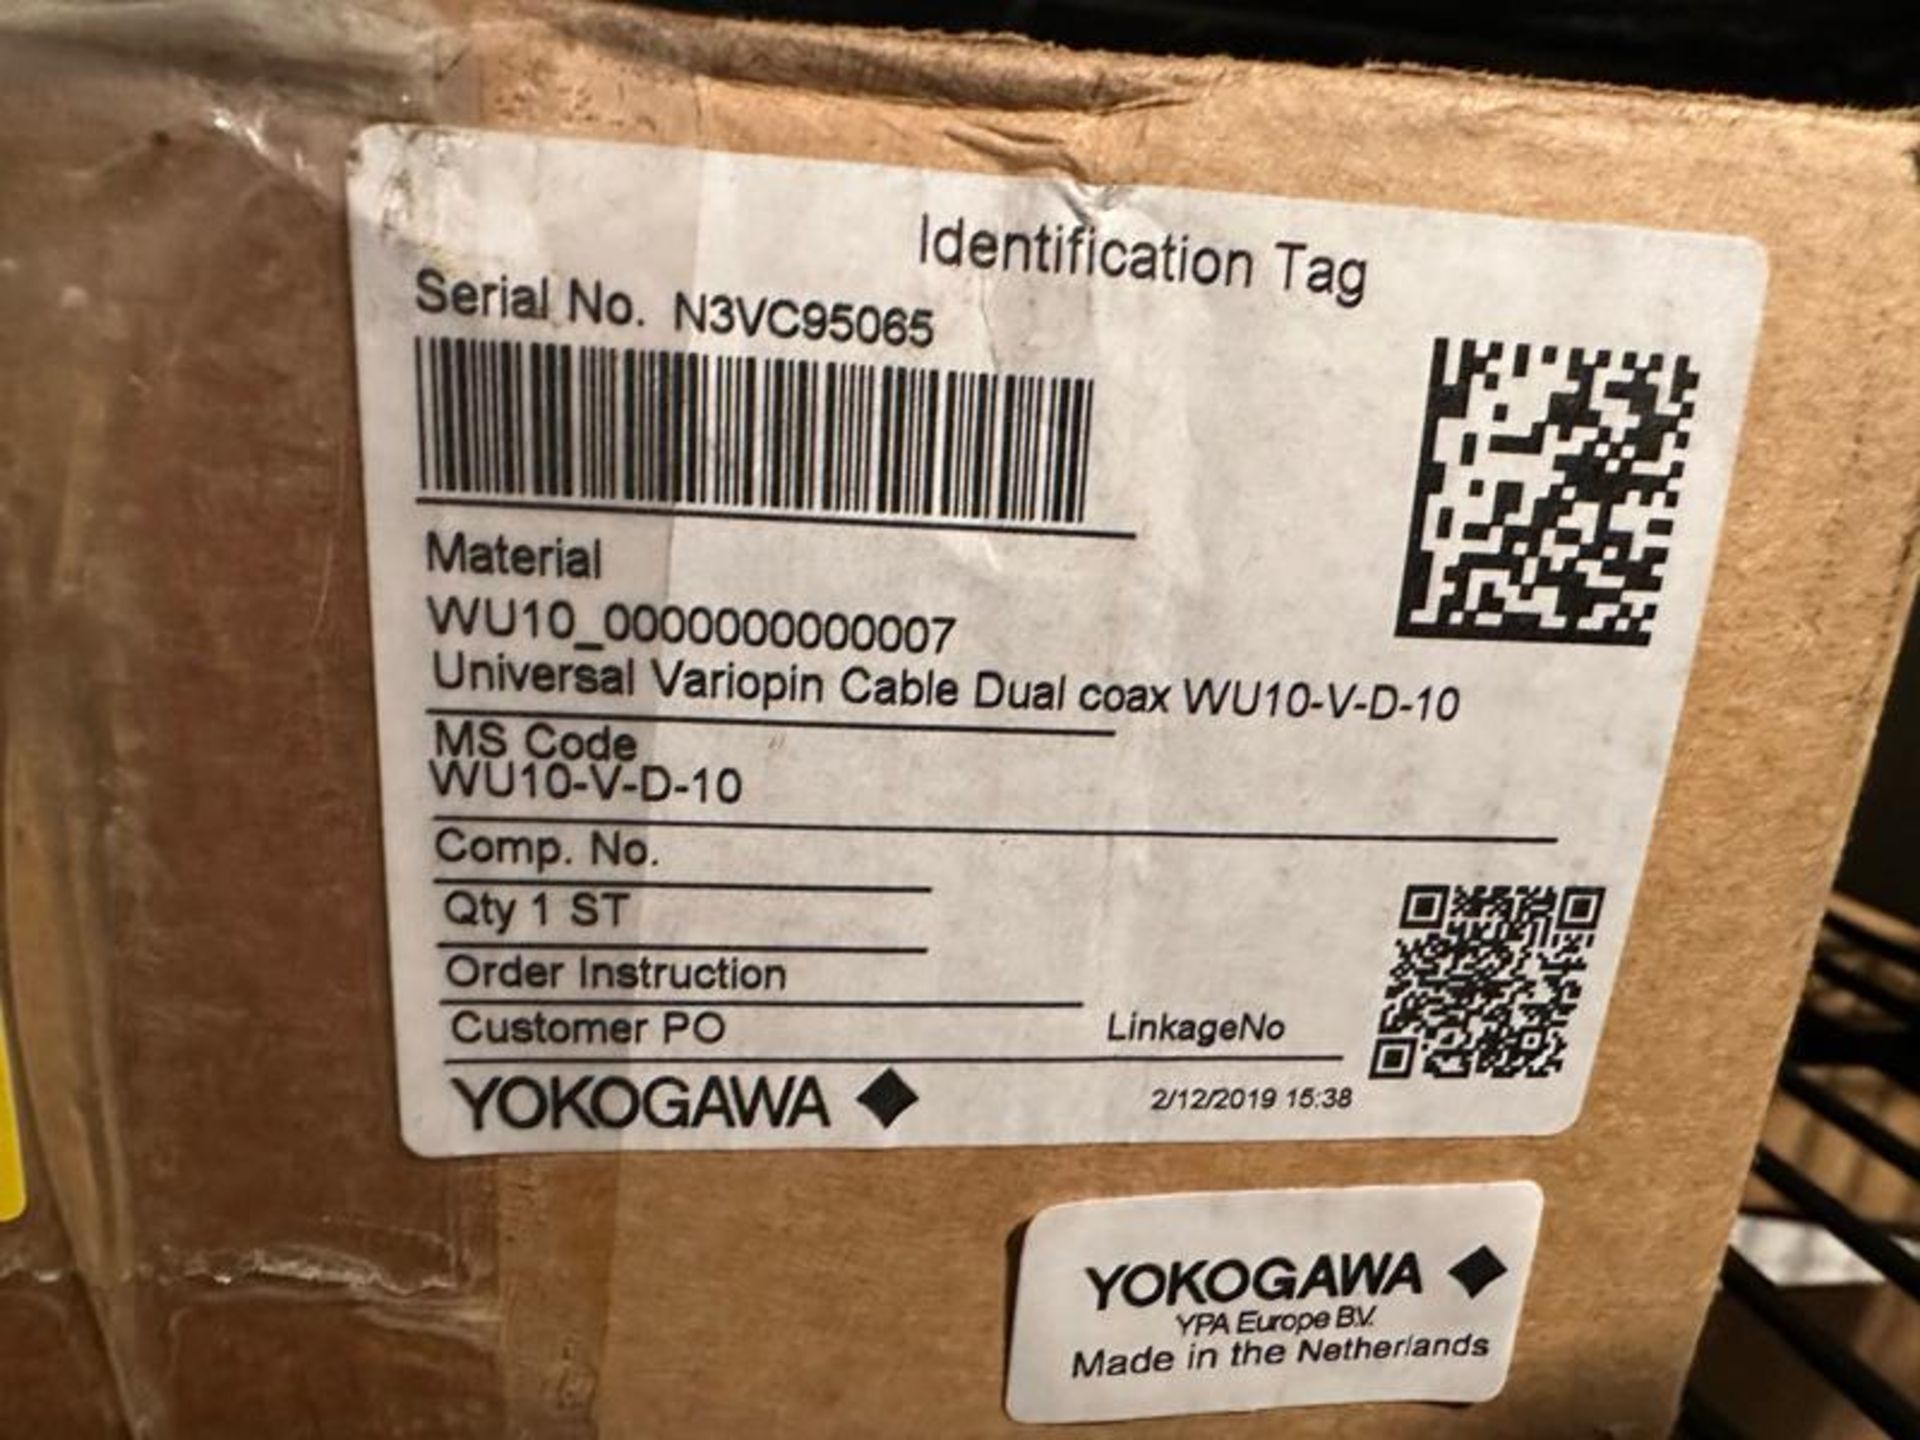 YOKOGAWA VARIOPIN CABLE WU10 V D 10 - Image 2 of 3